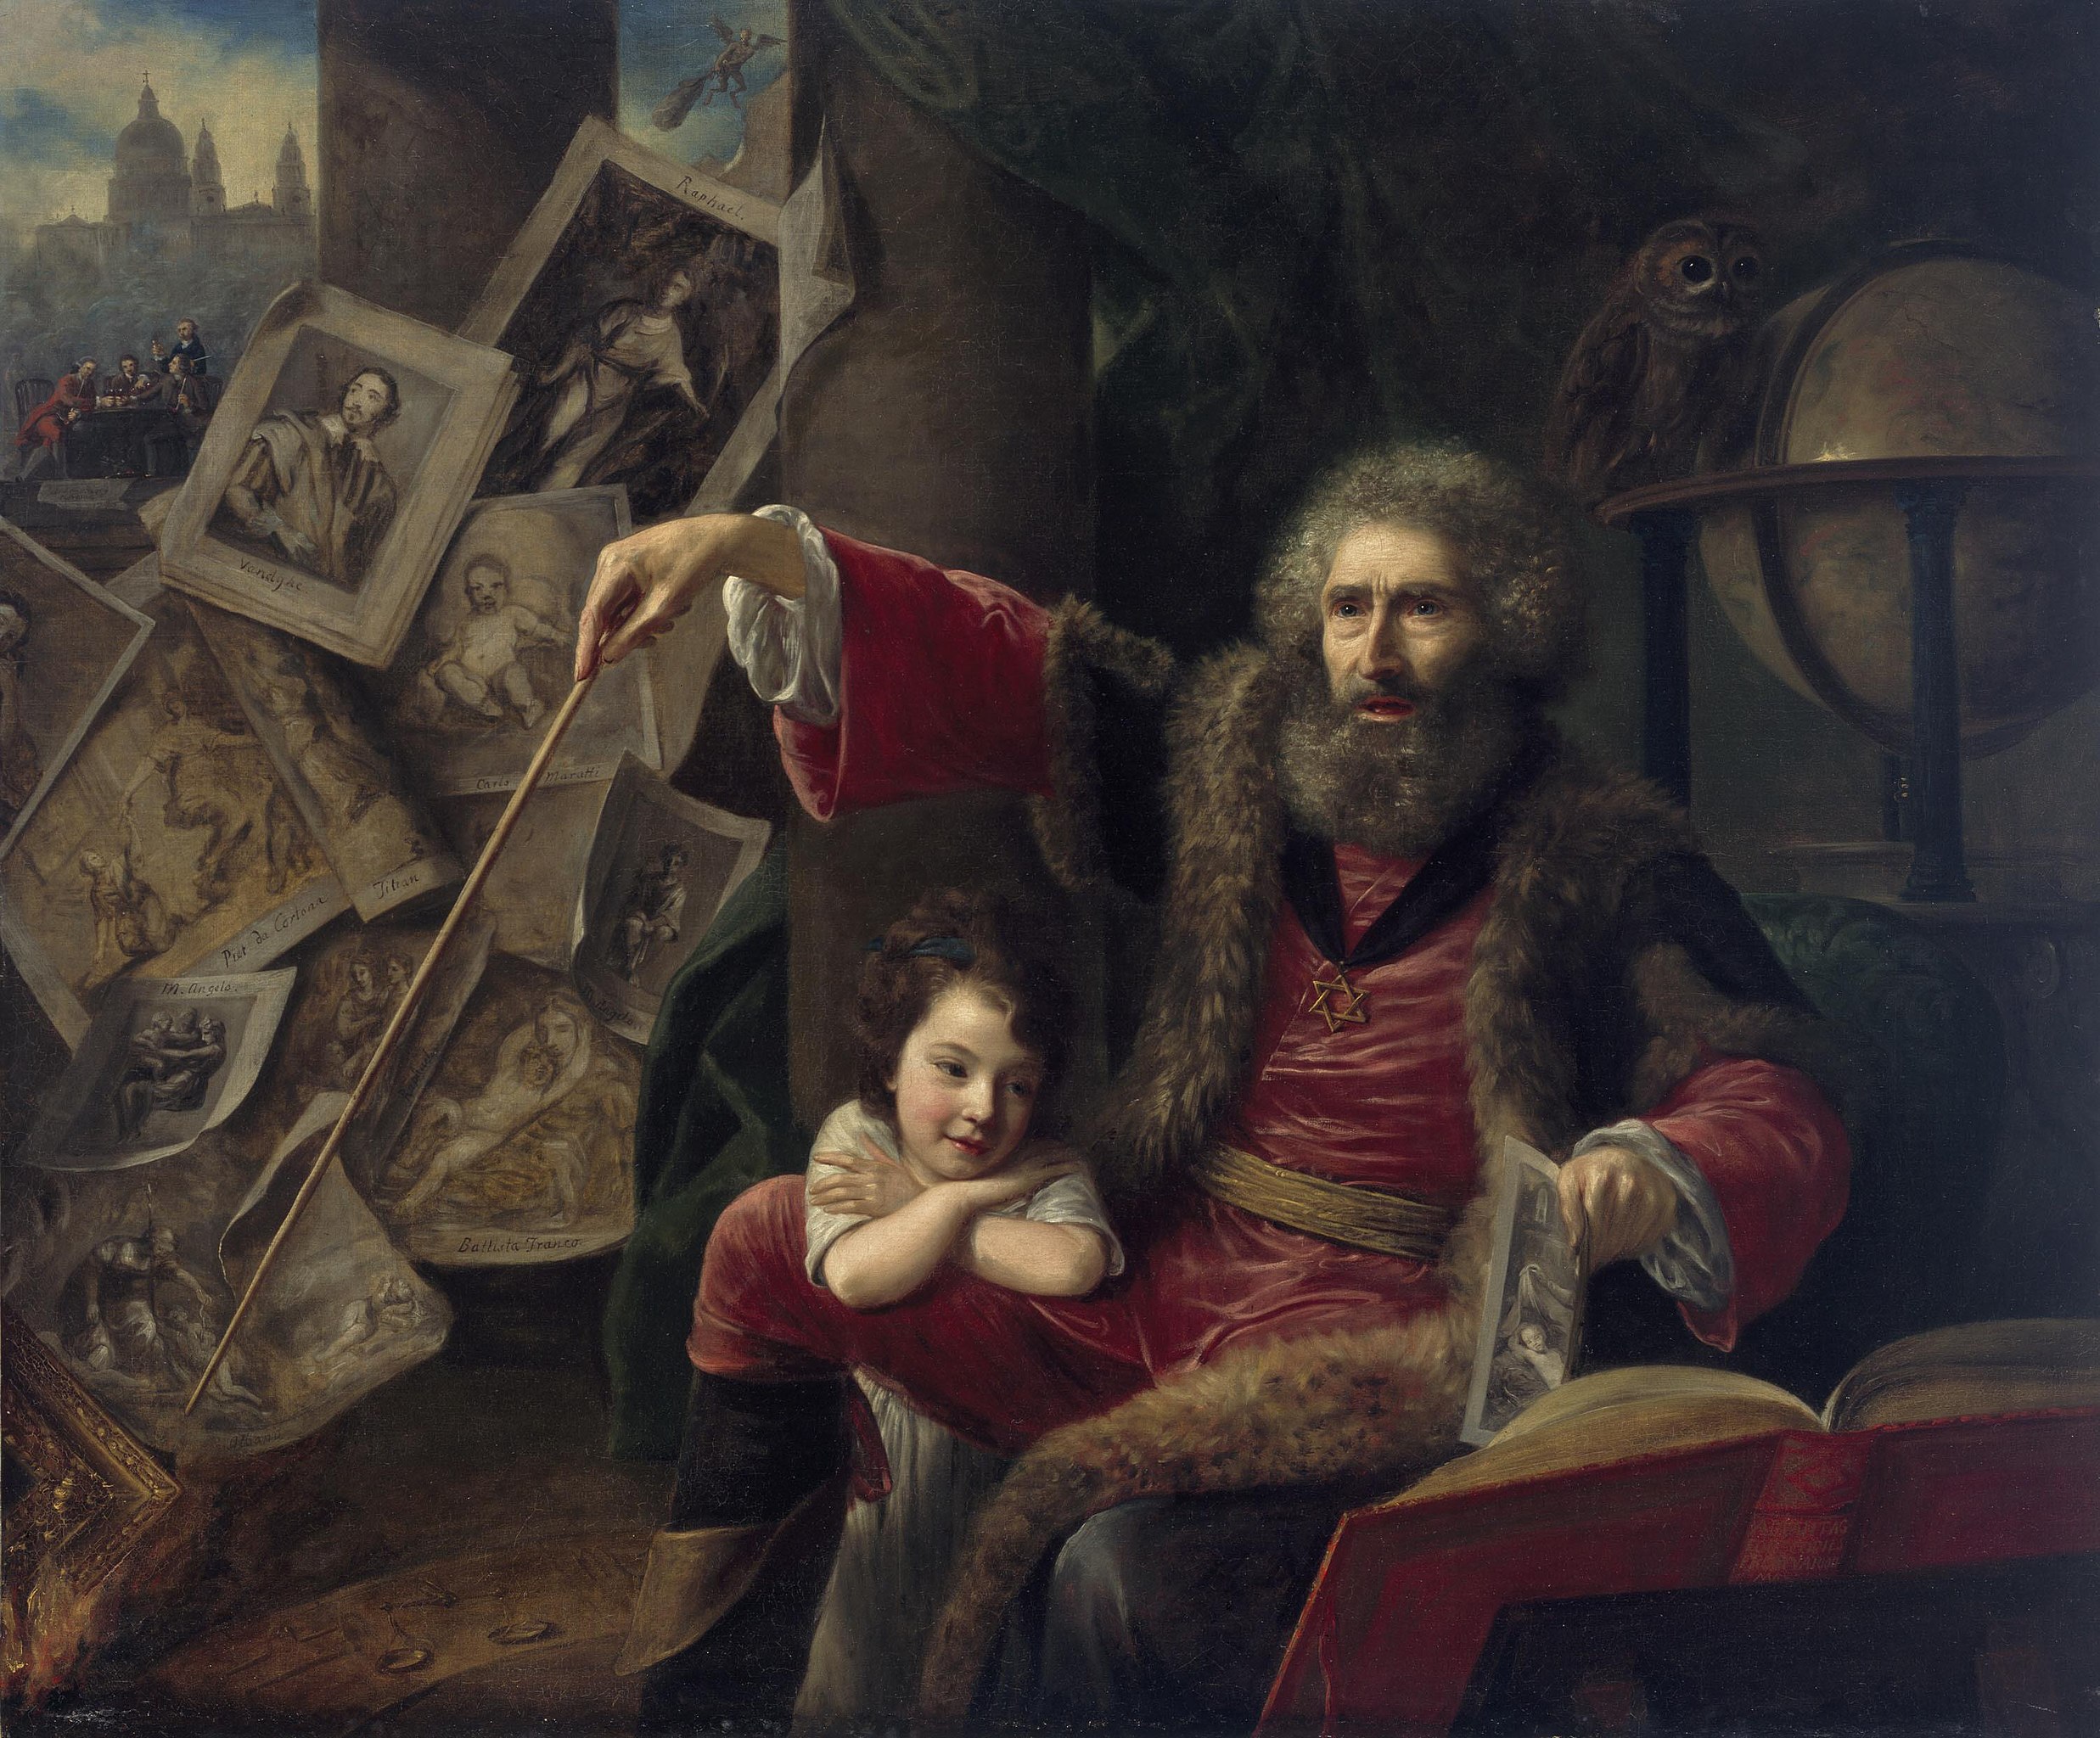 魔術師（錯視絵の中に描かれた魔術師） by Nathaniel Hone the Elder - 1775年 - 145 x 173 cm 